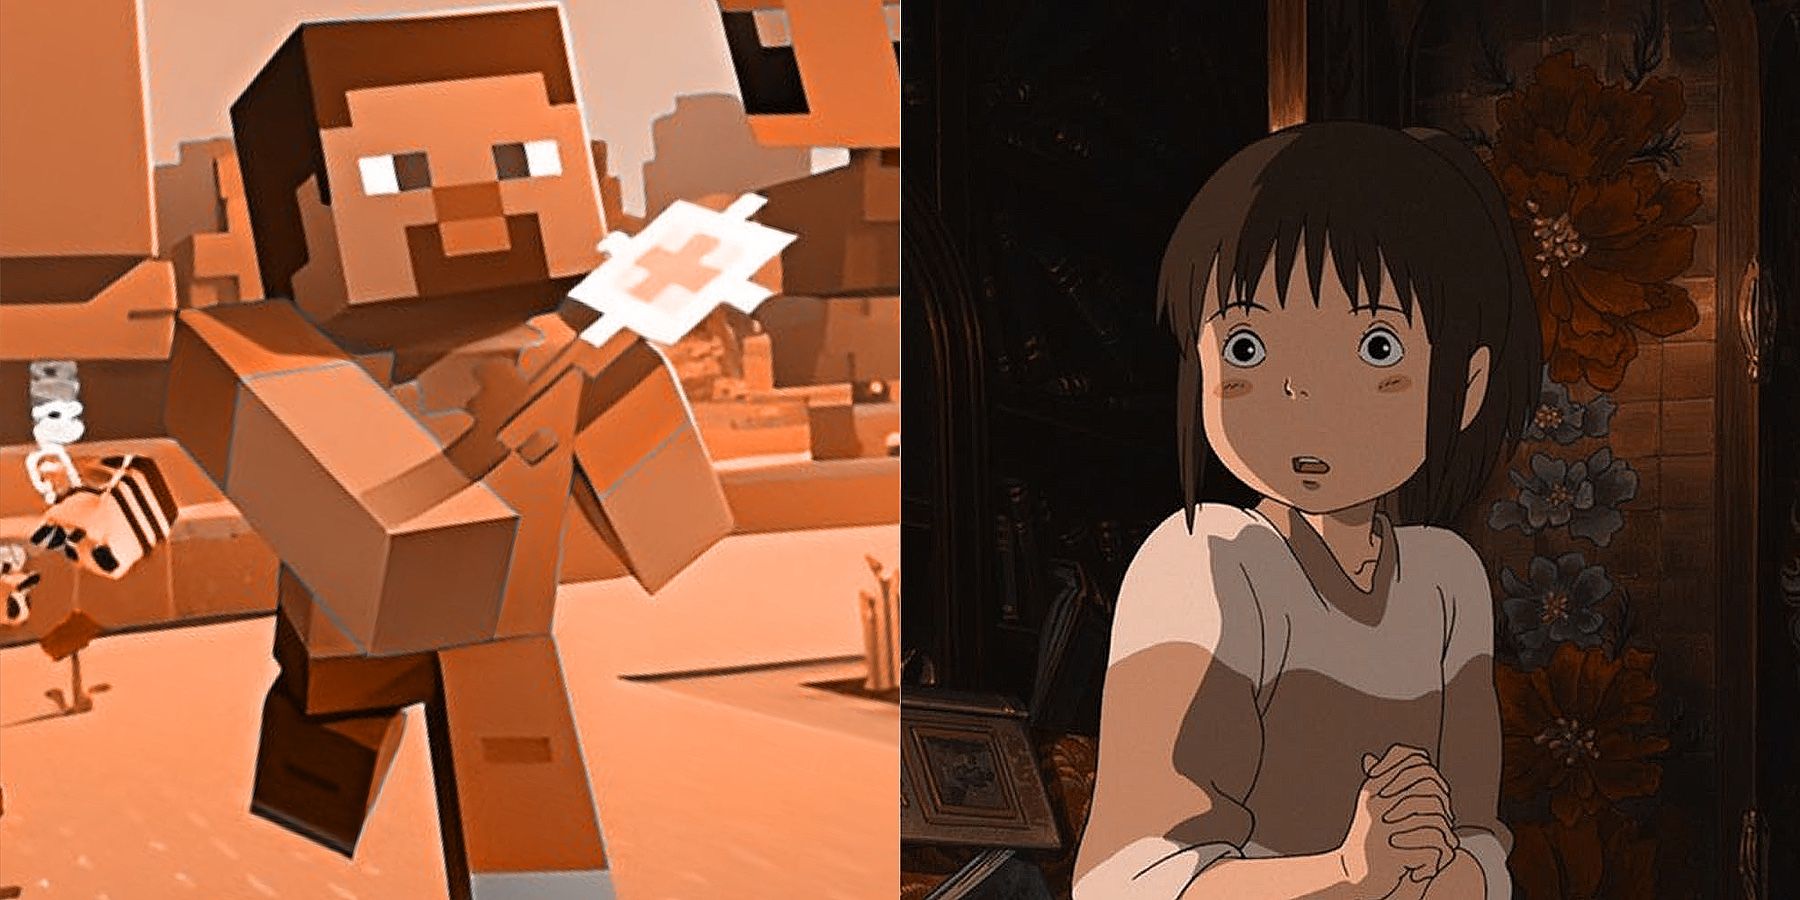 Minecraft Steve Studio Ghibli Spirited Away Chihiro Ogino